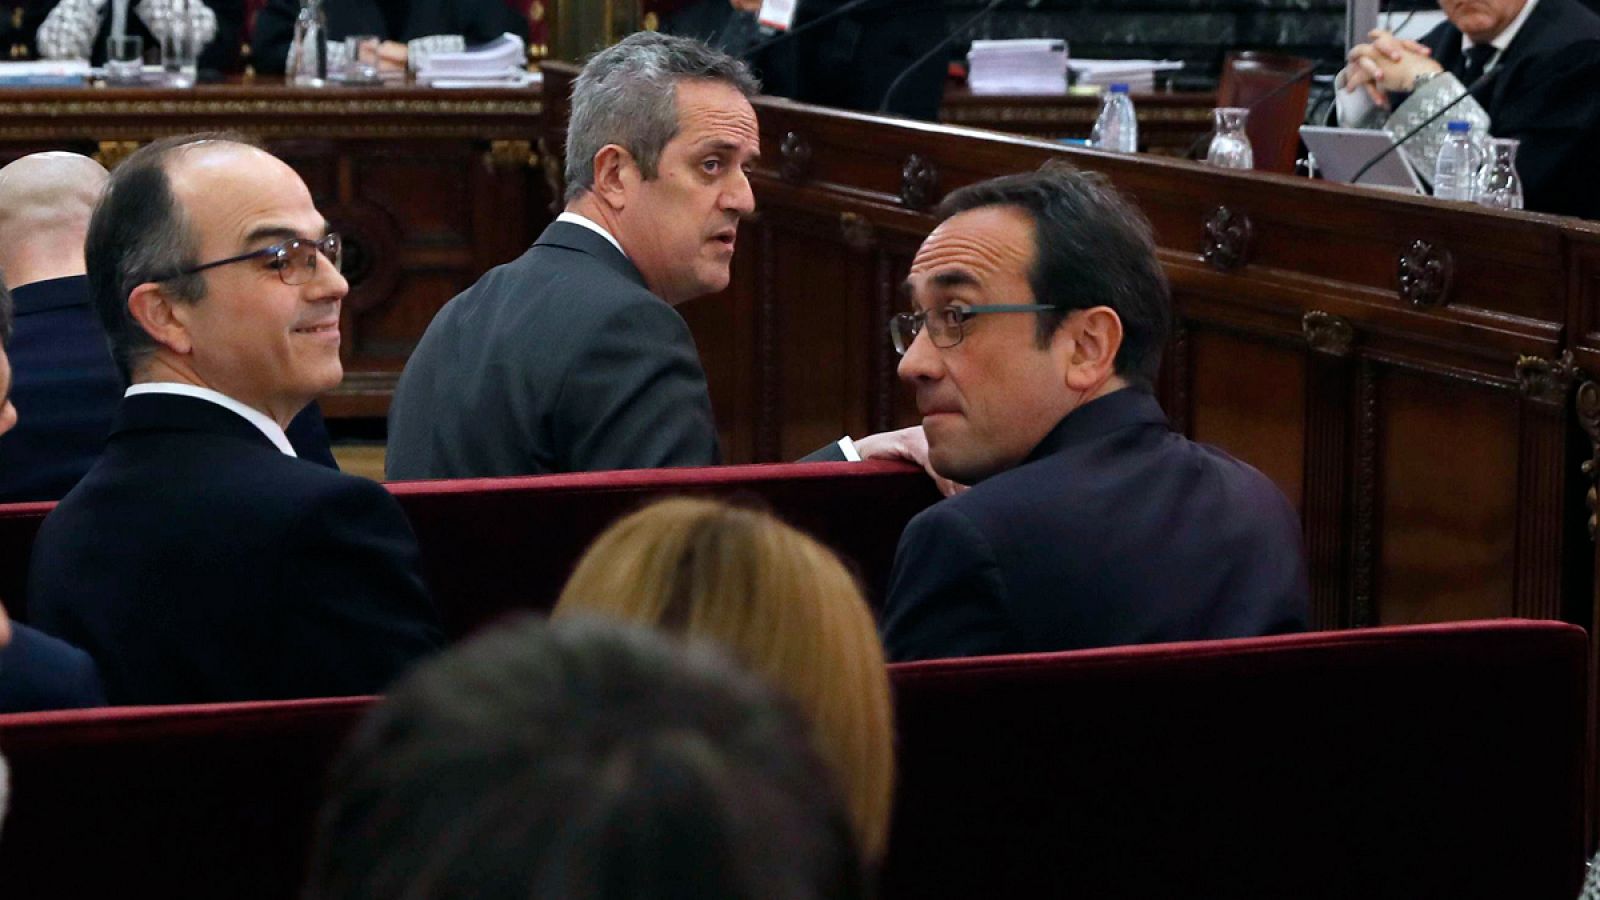 El exconsejero de Presidencia Jordi Turull (izq.),  y el exconsejero de Territorio y Sostenibilidad Josep Rull (der.), entre los acusados del juicio del "procés".